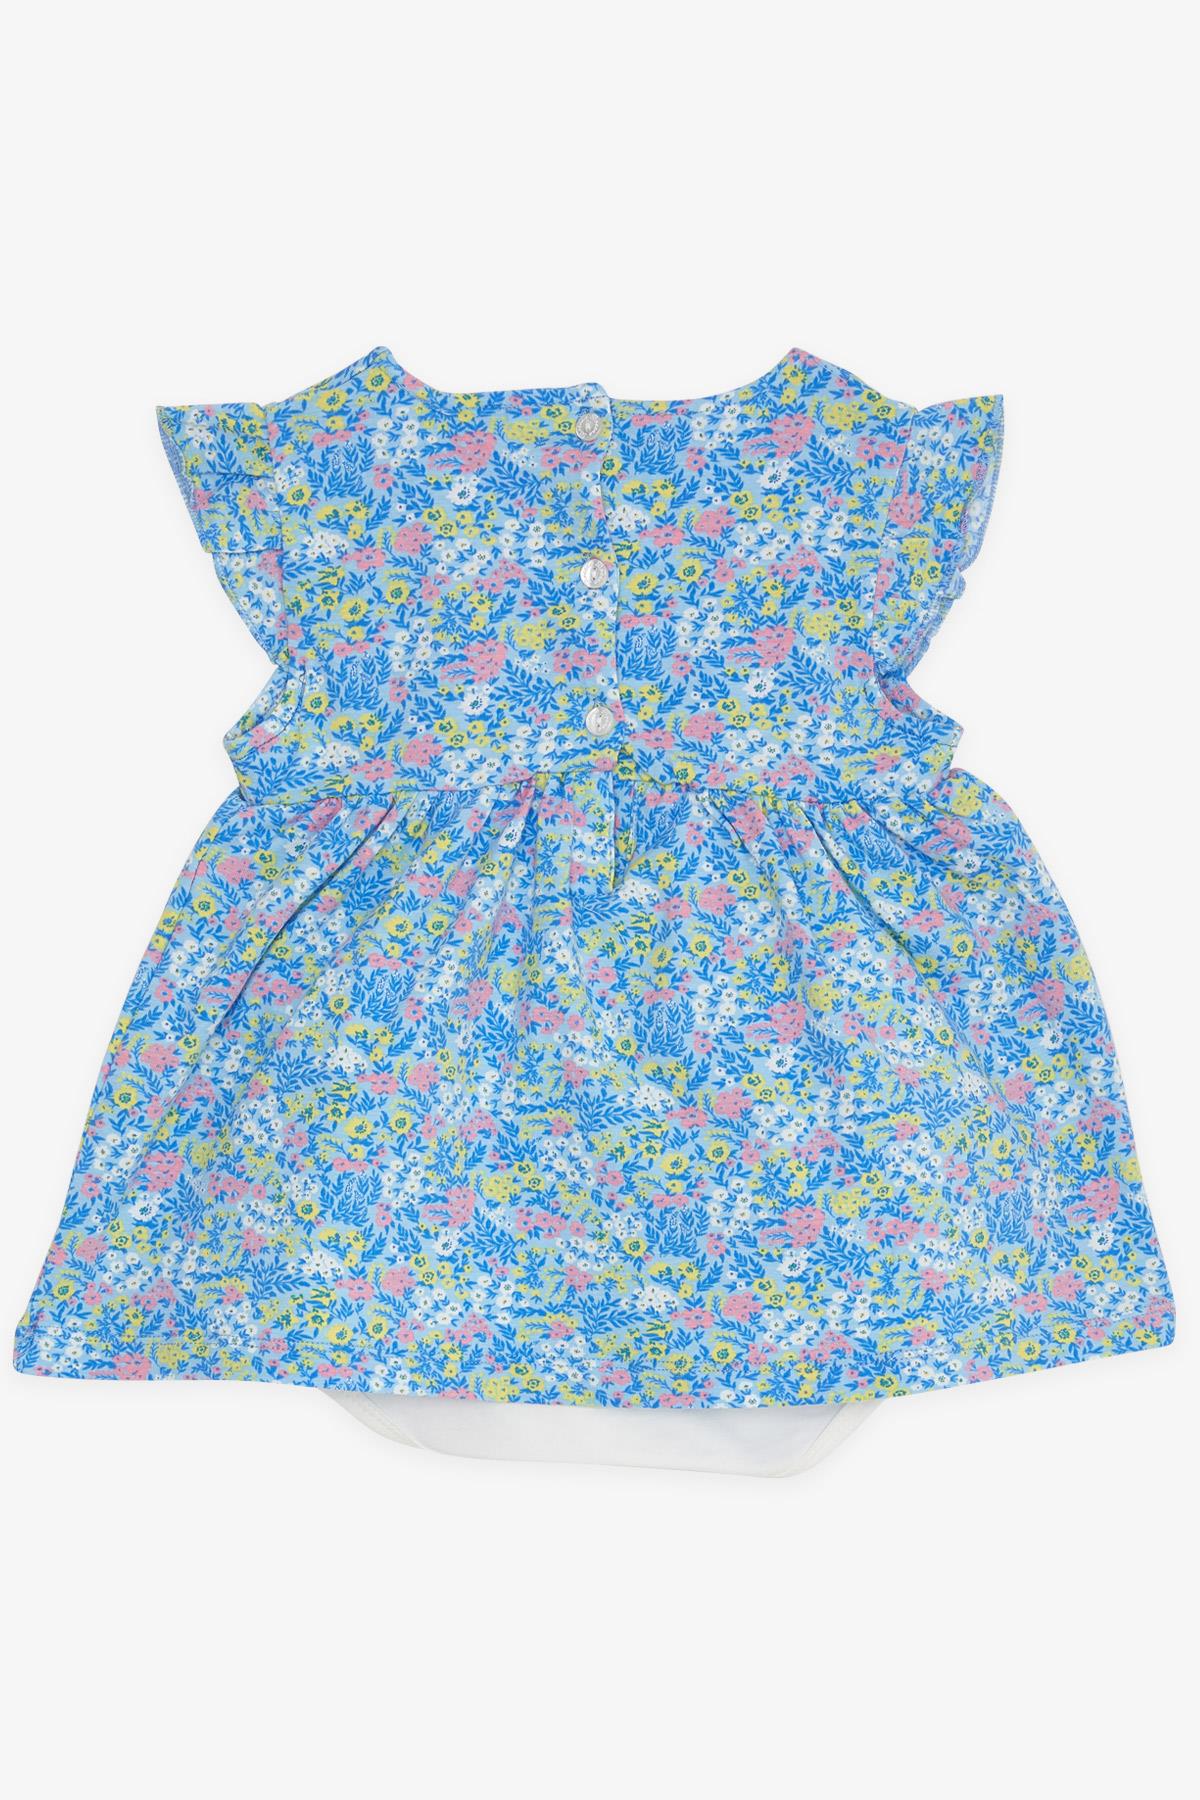 Kız Bebek Elbise Zıbınlı Çiçek Desenli Fiyonklu Mavi 9 Ay-3 Yaş - Şirin  Yazlık Elbise Modeller | Breeze